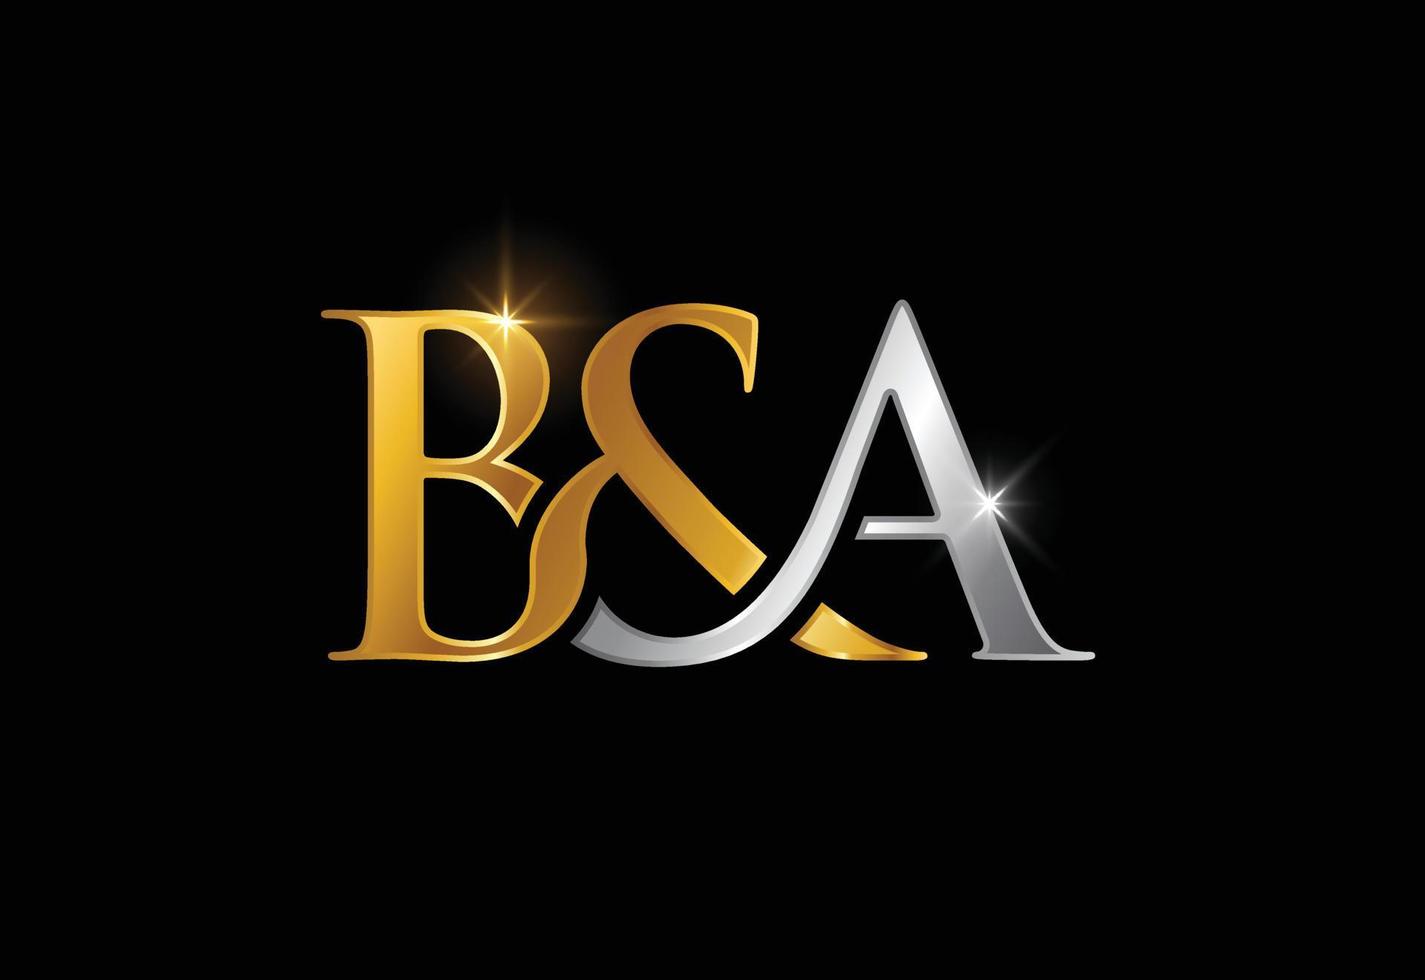 vector de diseño de logotipo de letra inicial ba. símbolo del alfabeto gráfico para la identidad empresarial corporativa